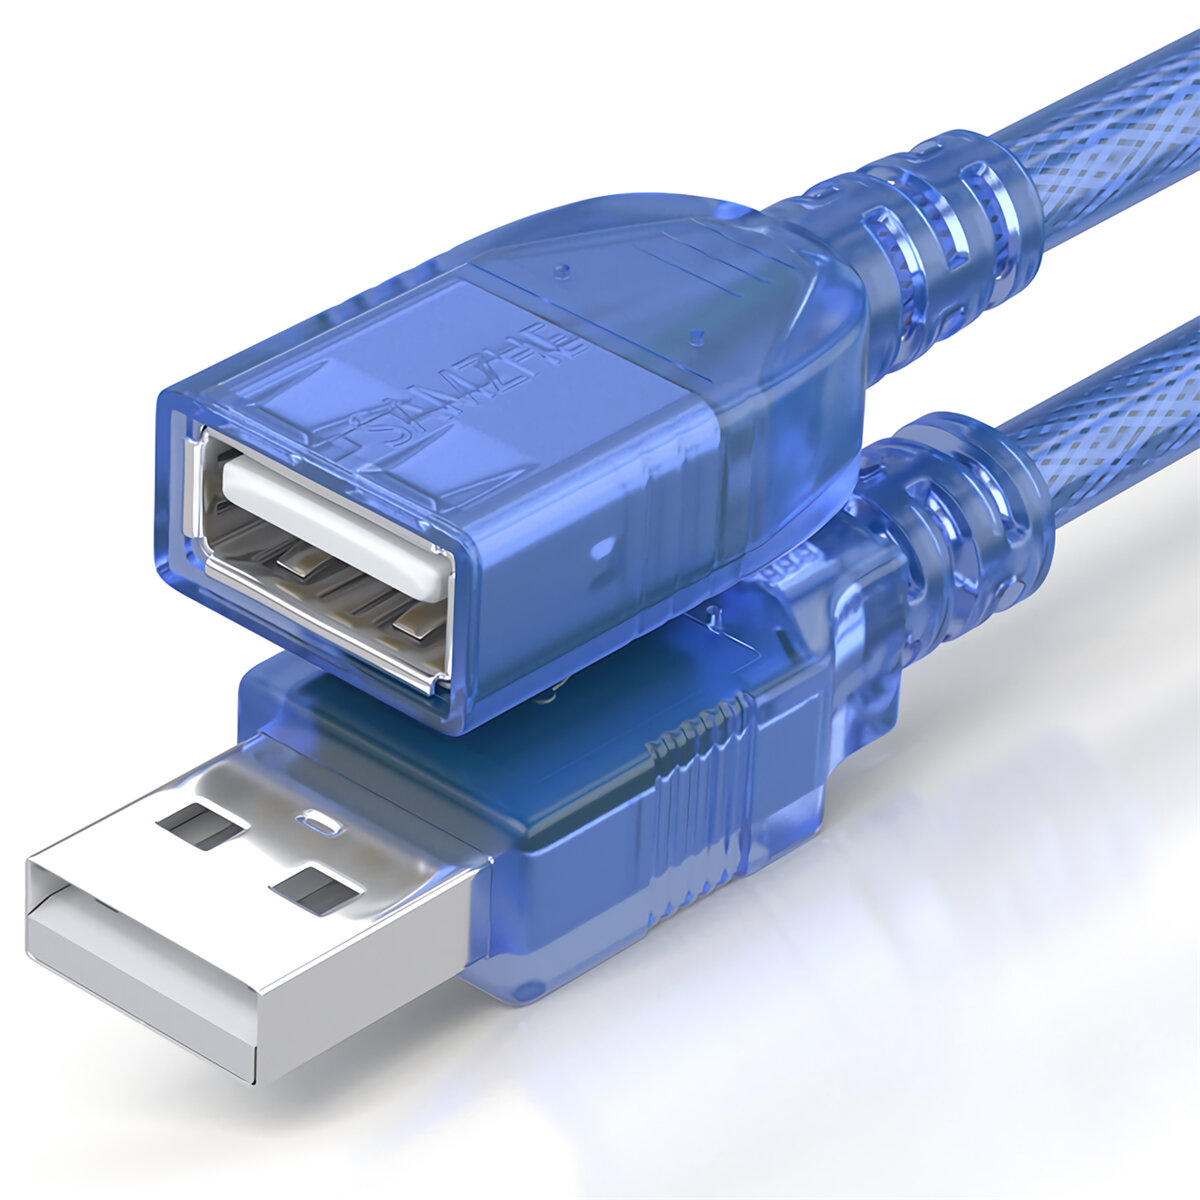 

SAMZHE USB 2.0 Удлинительный кабель USB между мужчинами и женщинами Прозрачный синий высокоскоростной USB удлинитель BL-